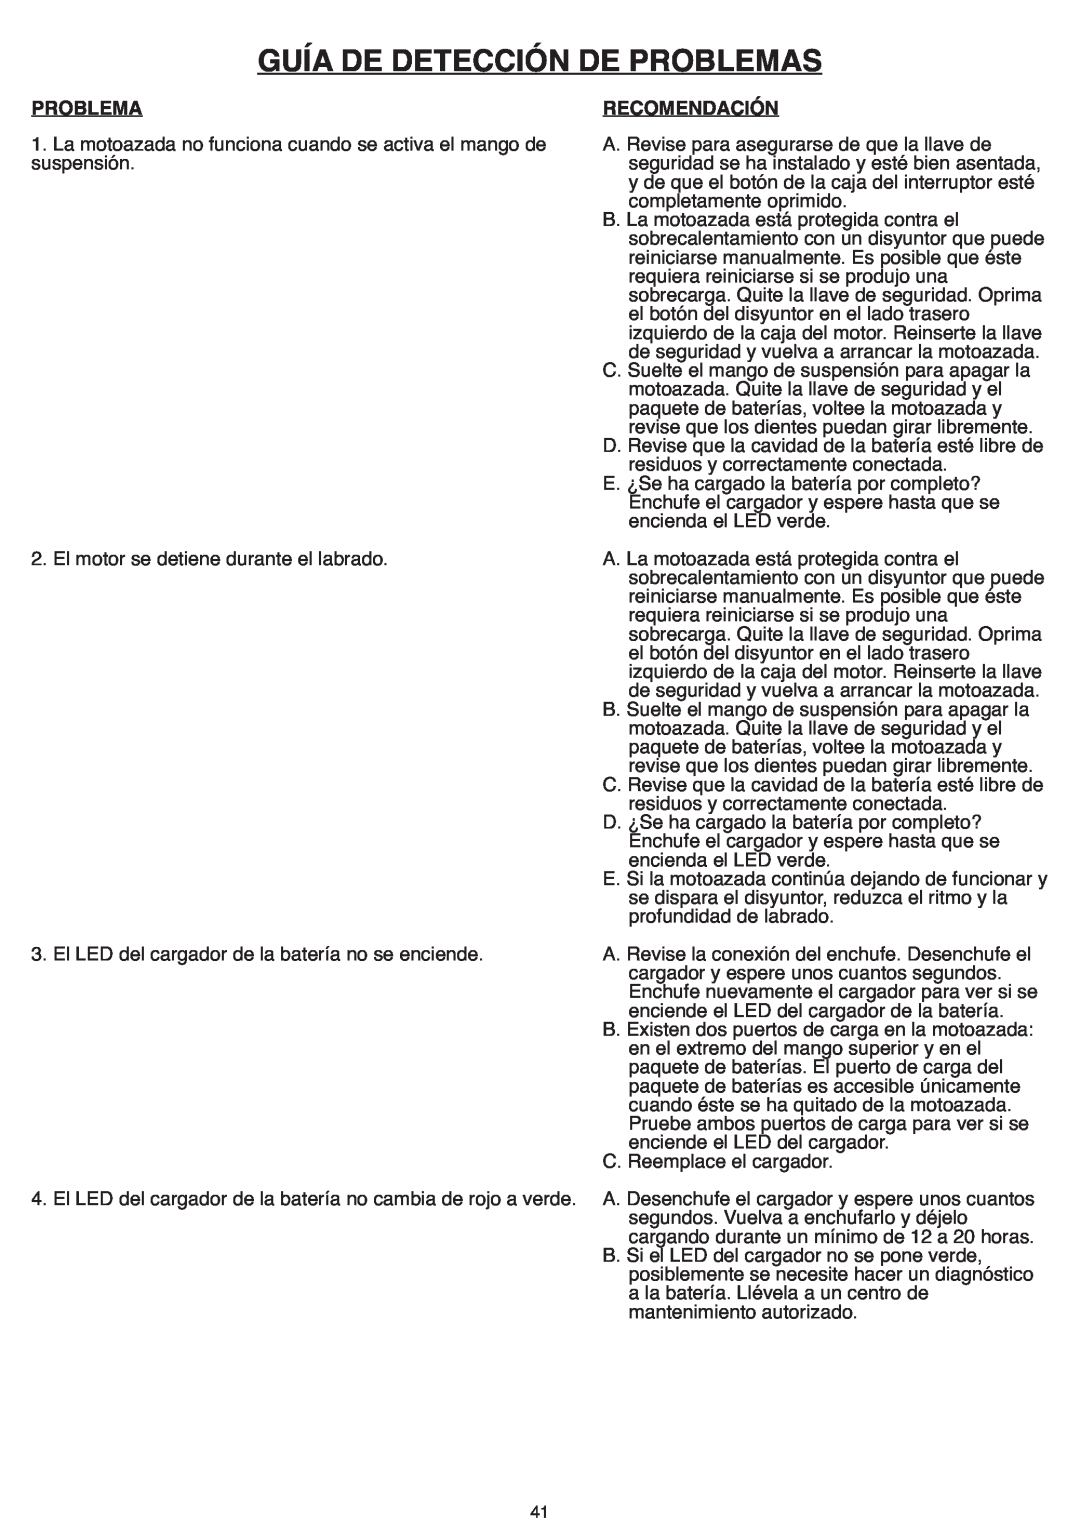 Black & Decker CTL36 instruction manual Guía De Detección De Problemas, Recomendación 